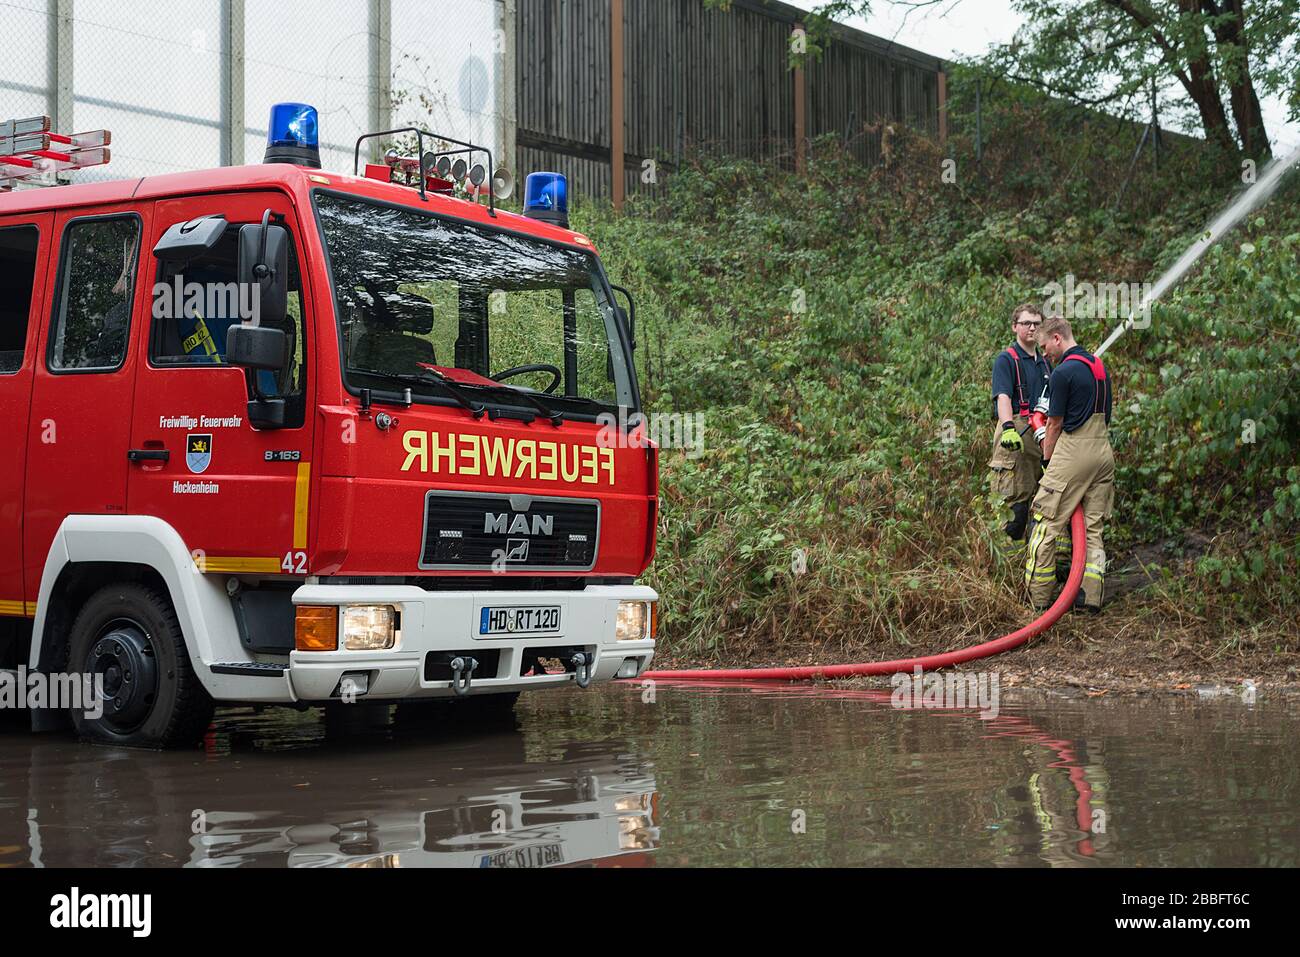 Dos personal de bomberos de los servicios de emergencia ayudan a bombear agua de inundación desde una carretera con sus poderosas bombas camiones de bomberos rojos. Foto de stock